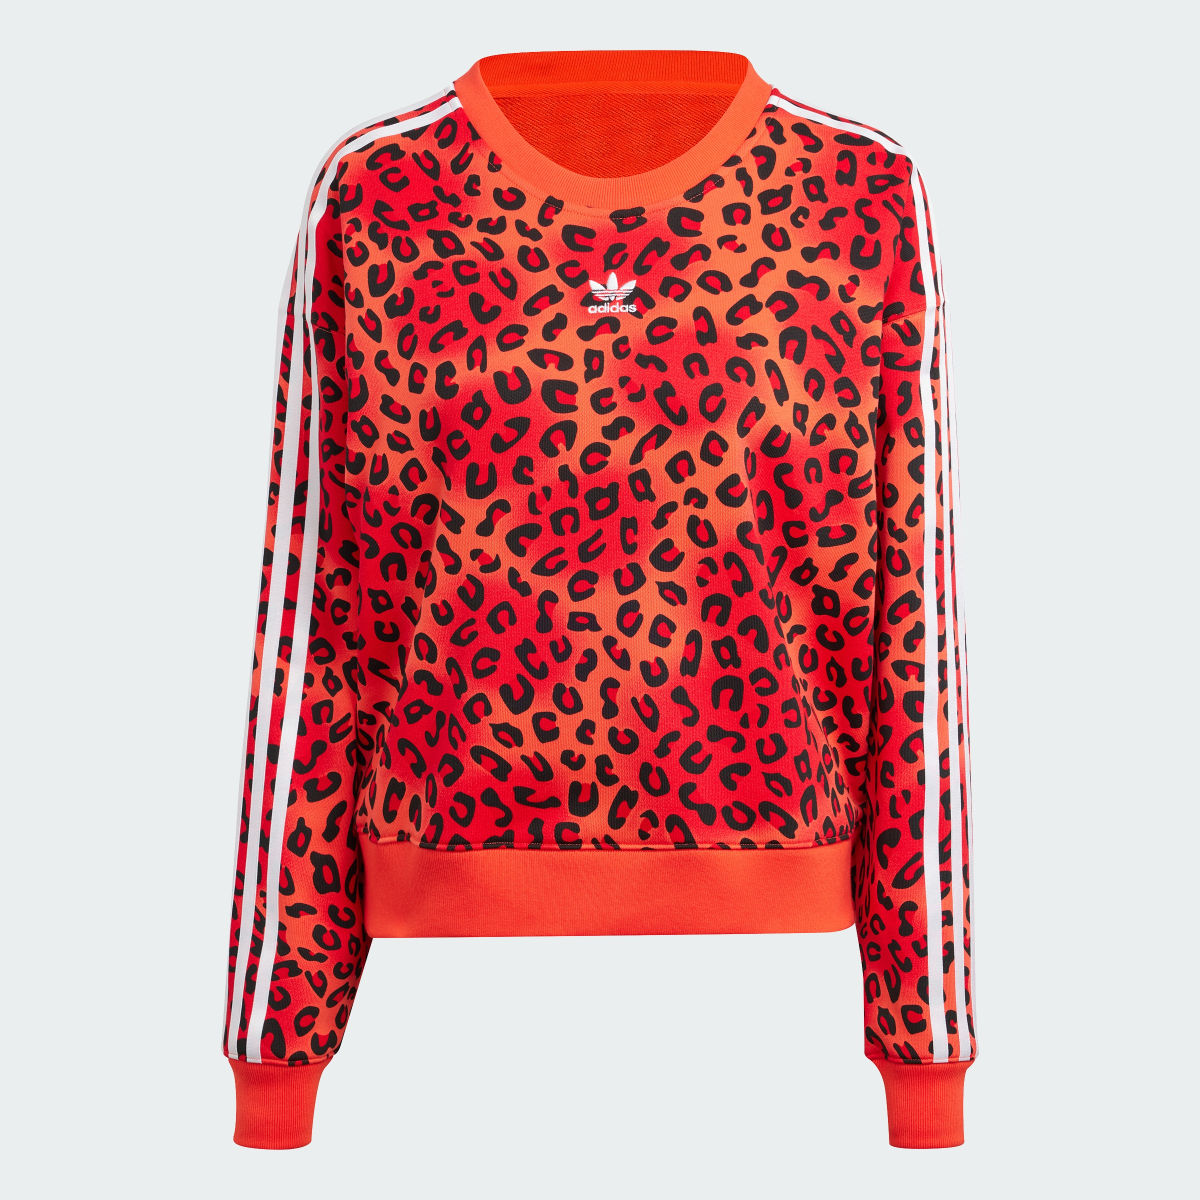 Adidas Originals Leopard Luxe Trefoil Crew Sweatshirt. 5